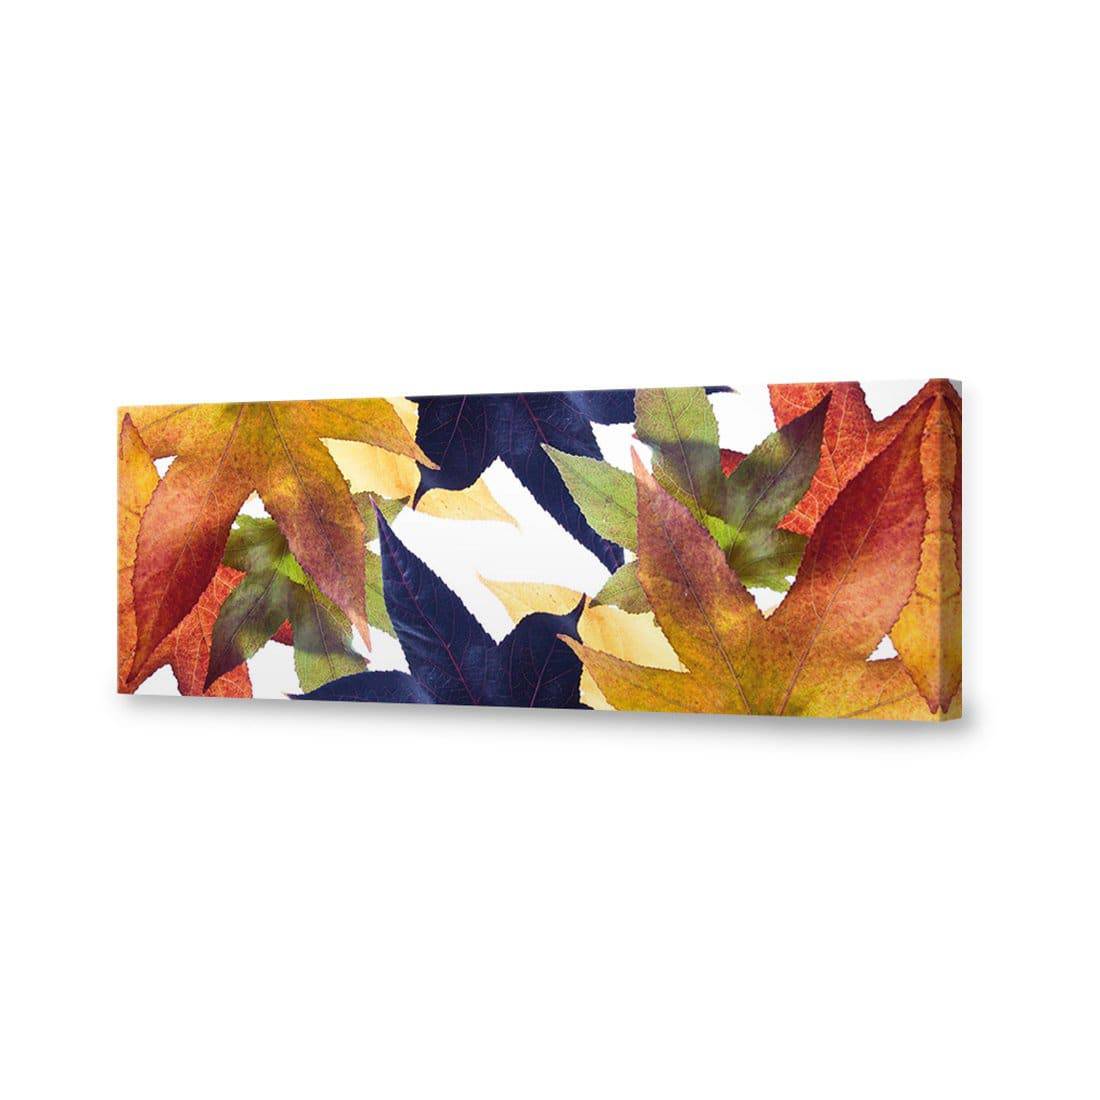 Leaf Kaleidoscope Canvas Art-Canvas-Wall Art Designs-60x20cm-Canvas - No Frame-Wall Art Designs